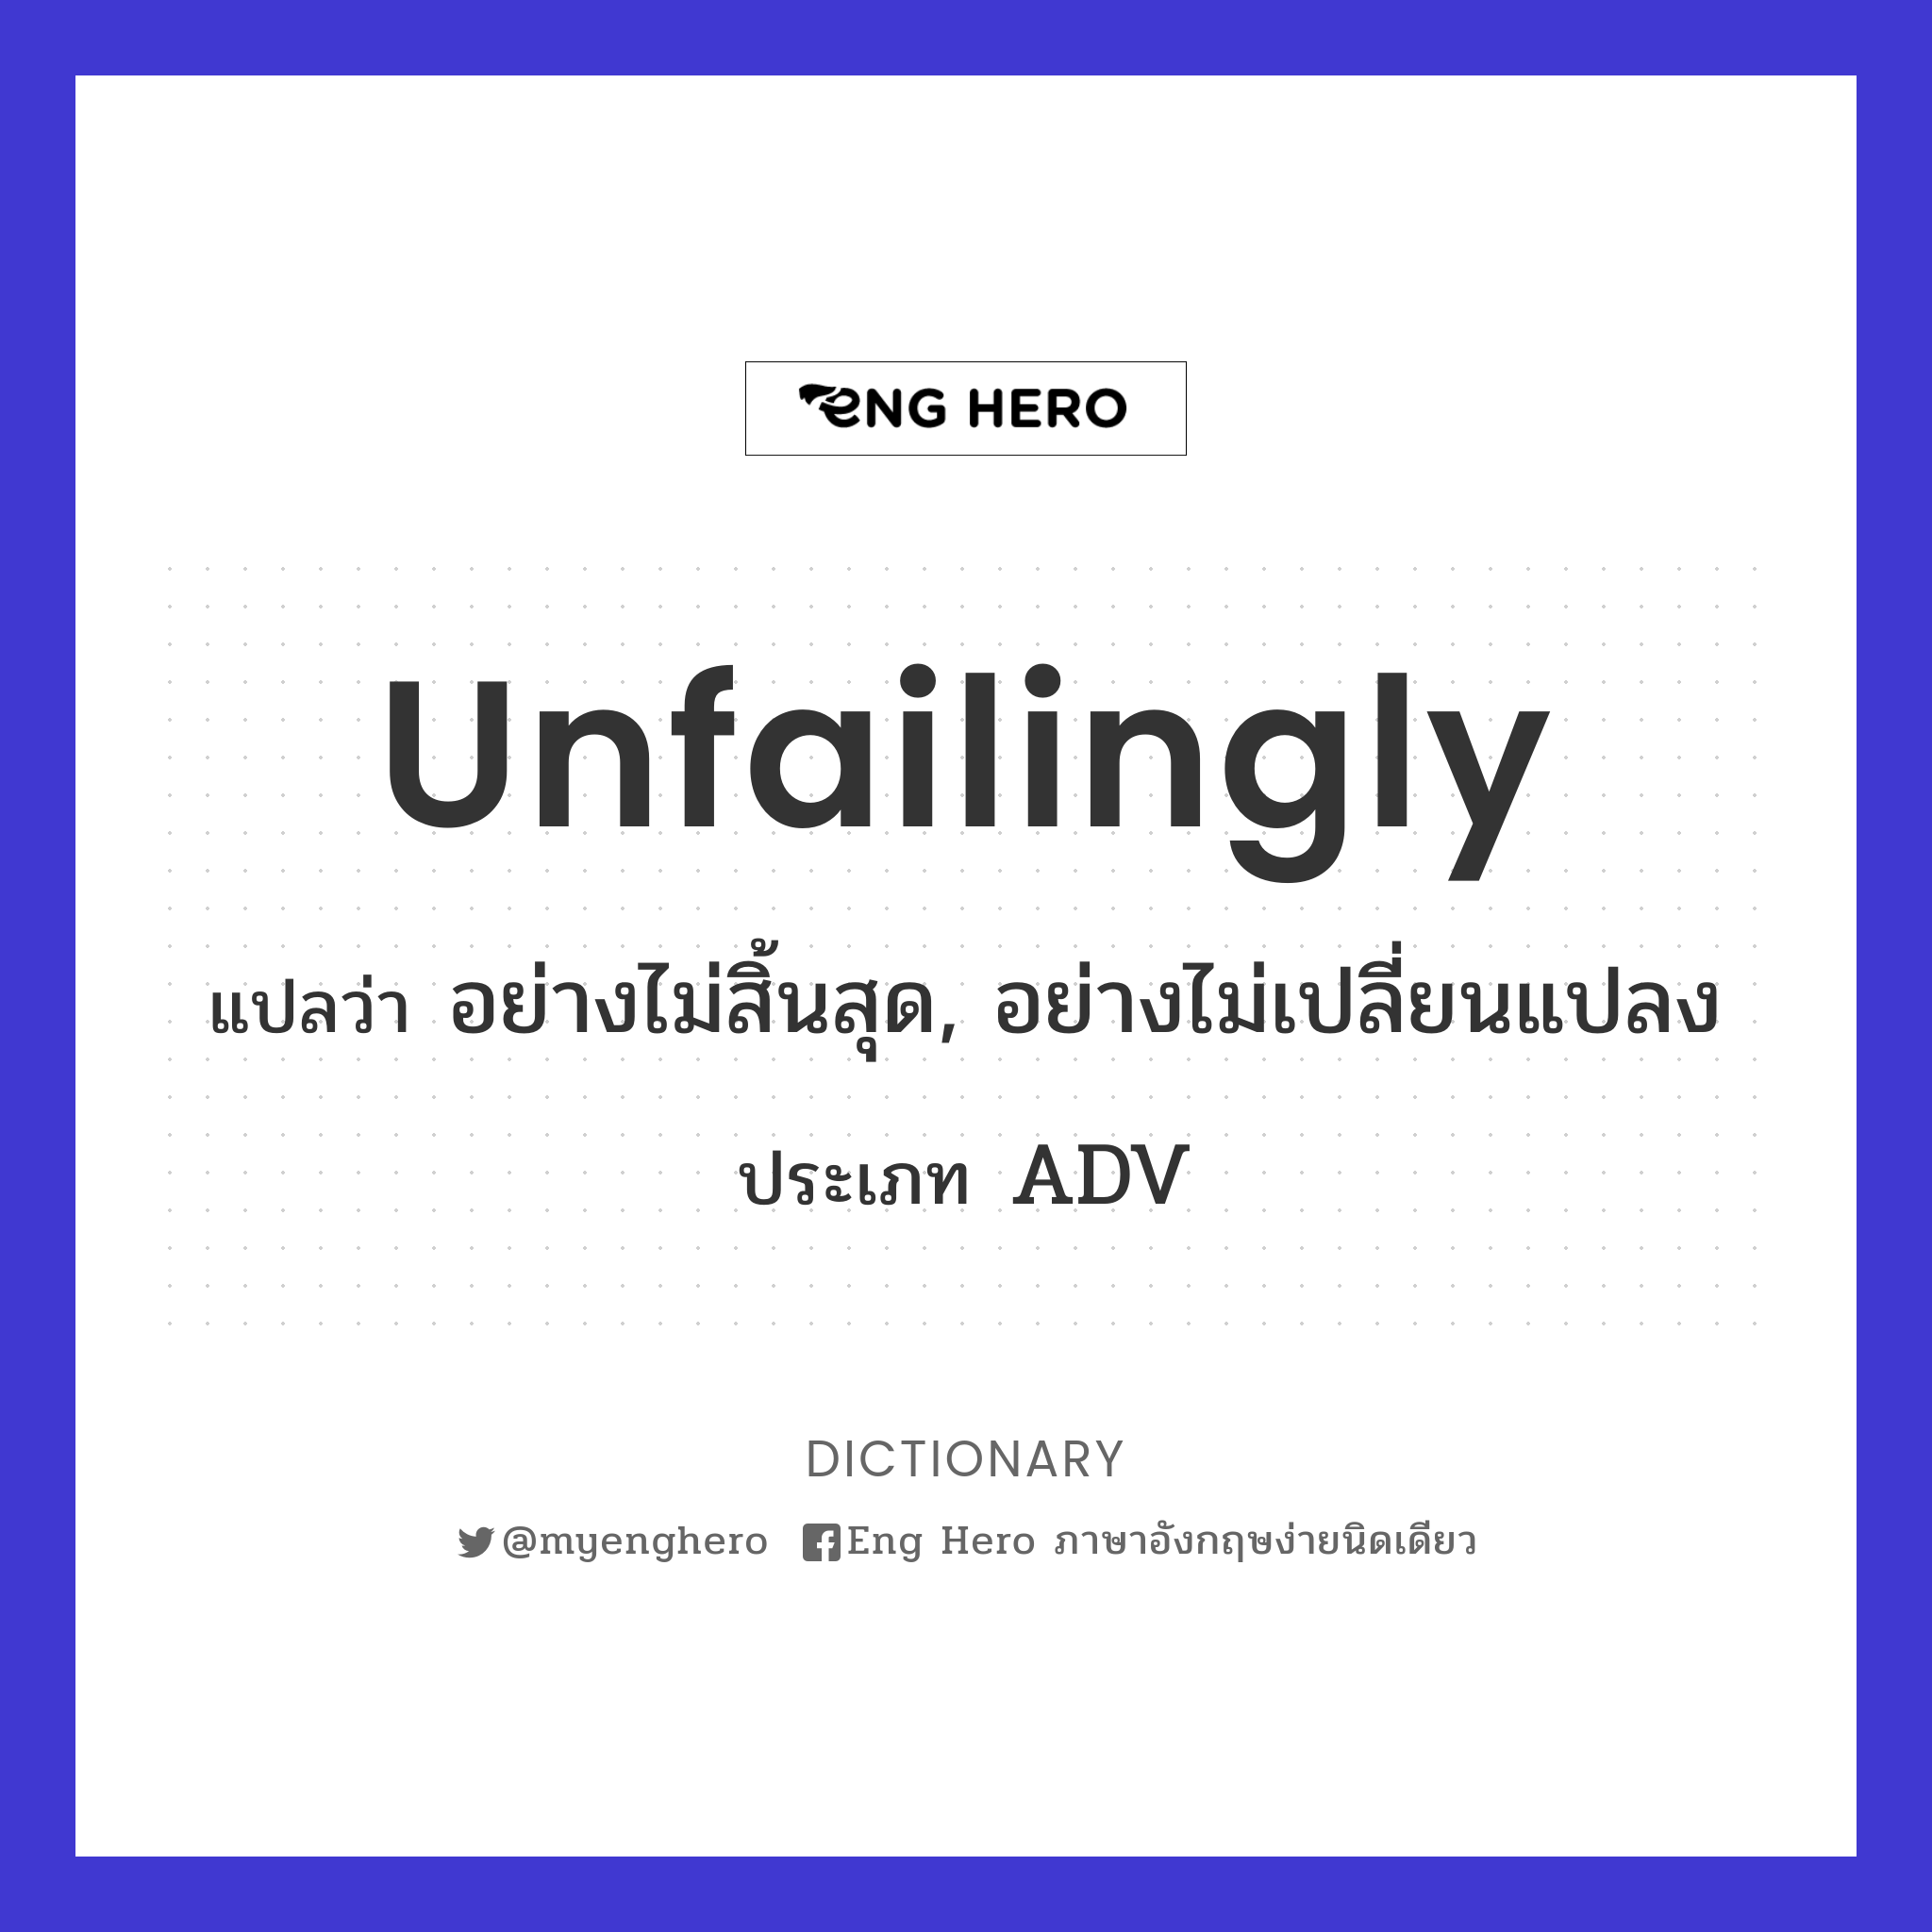 unfailingly